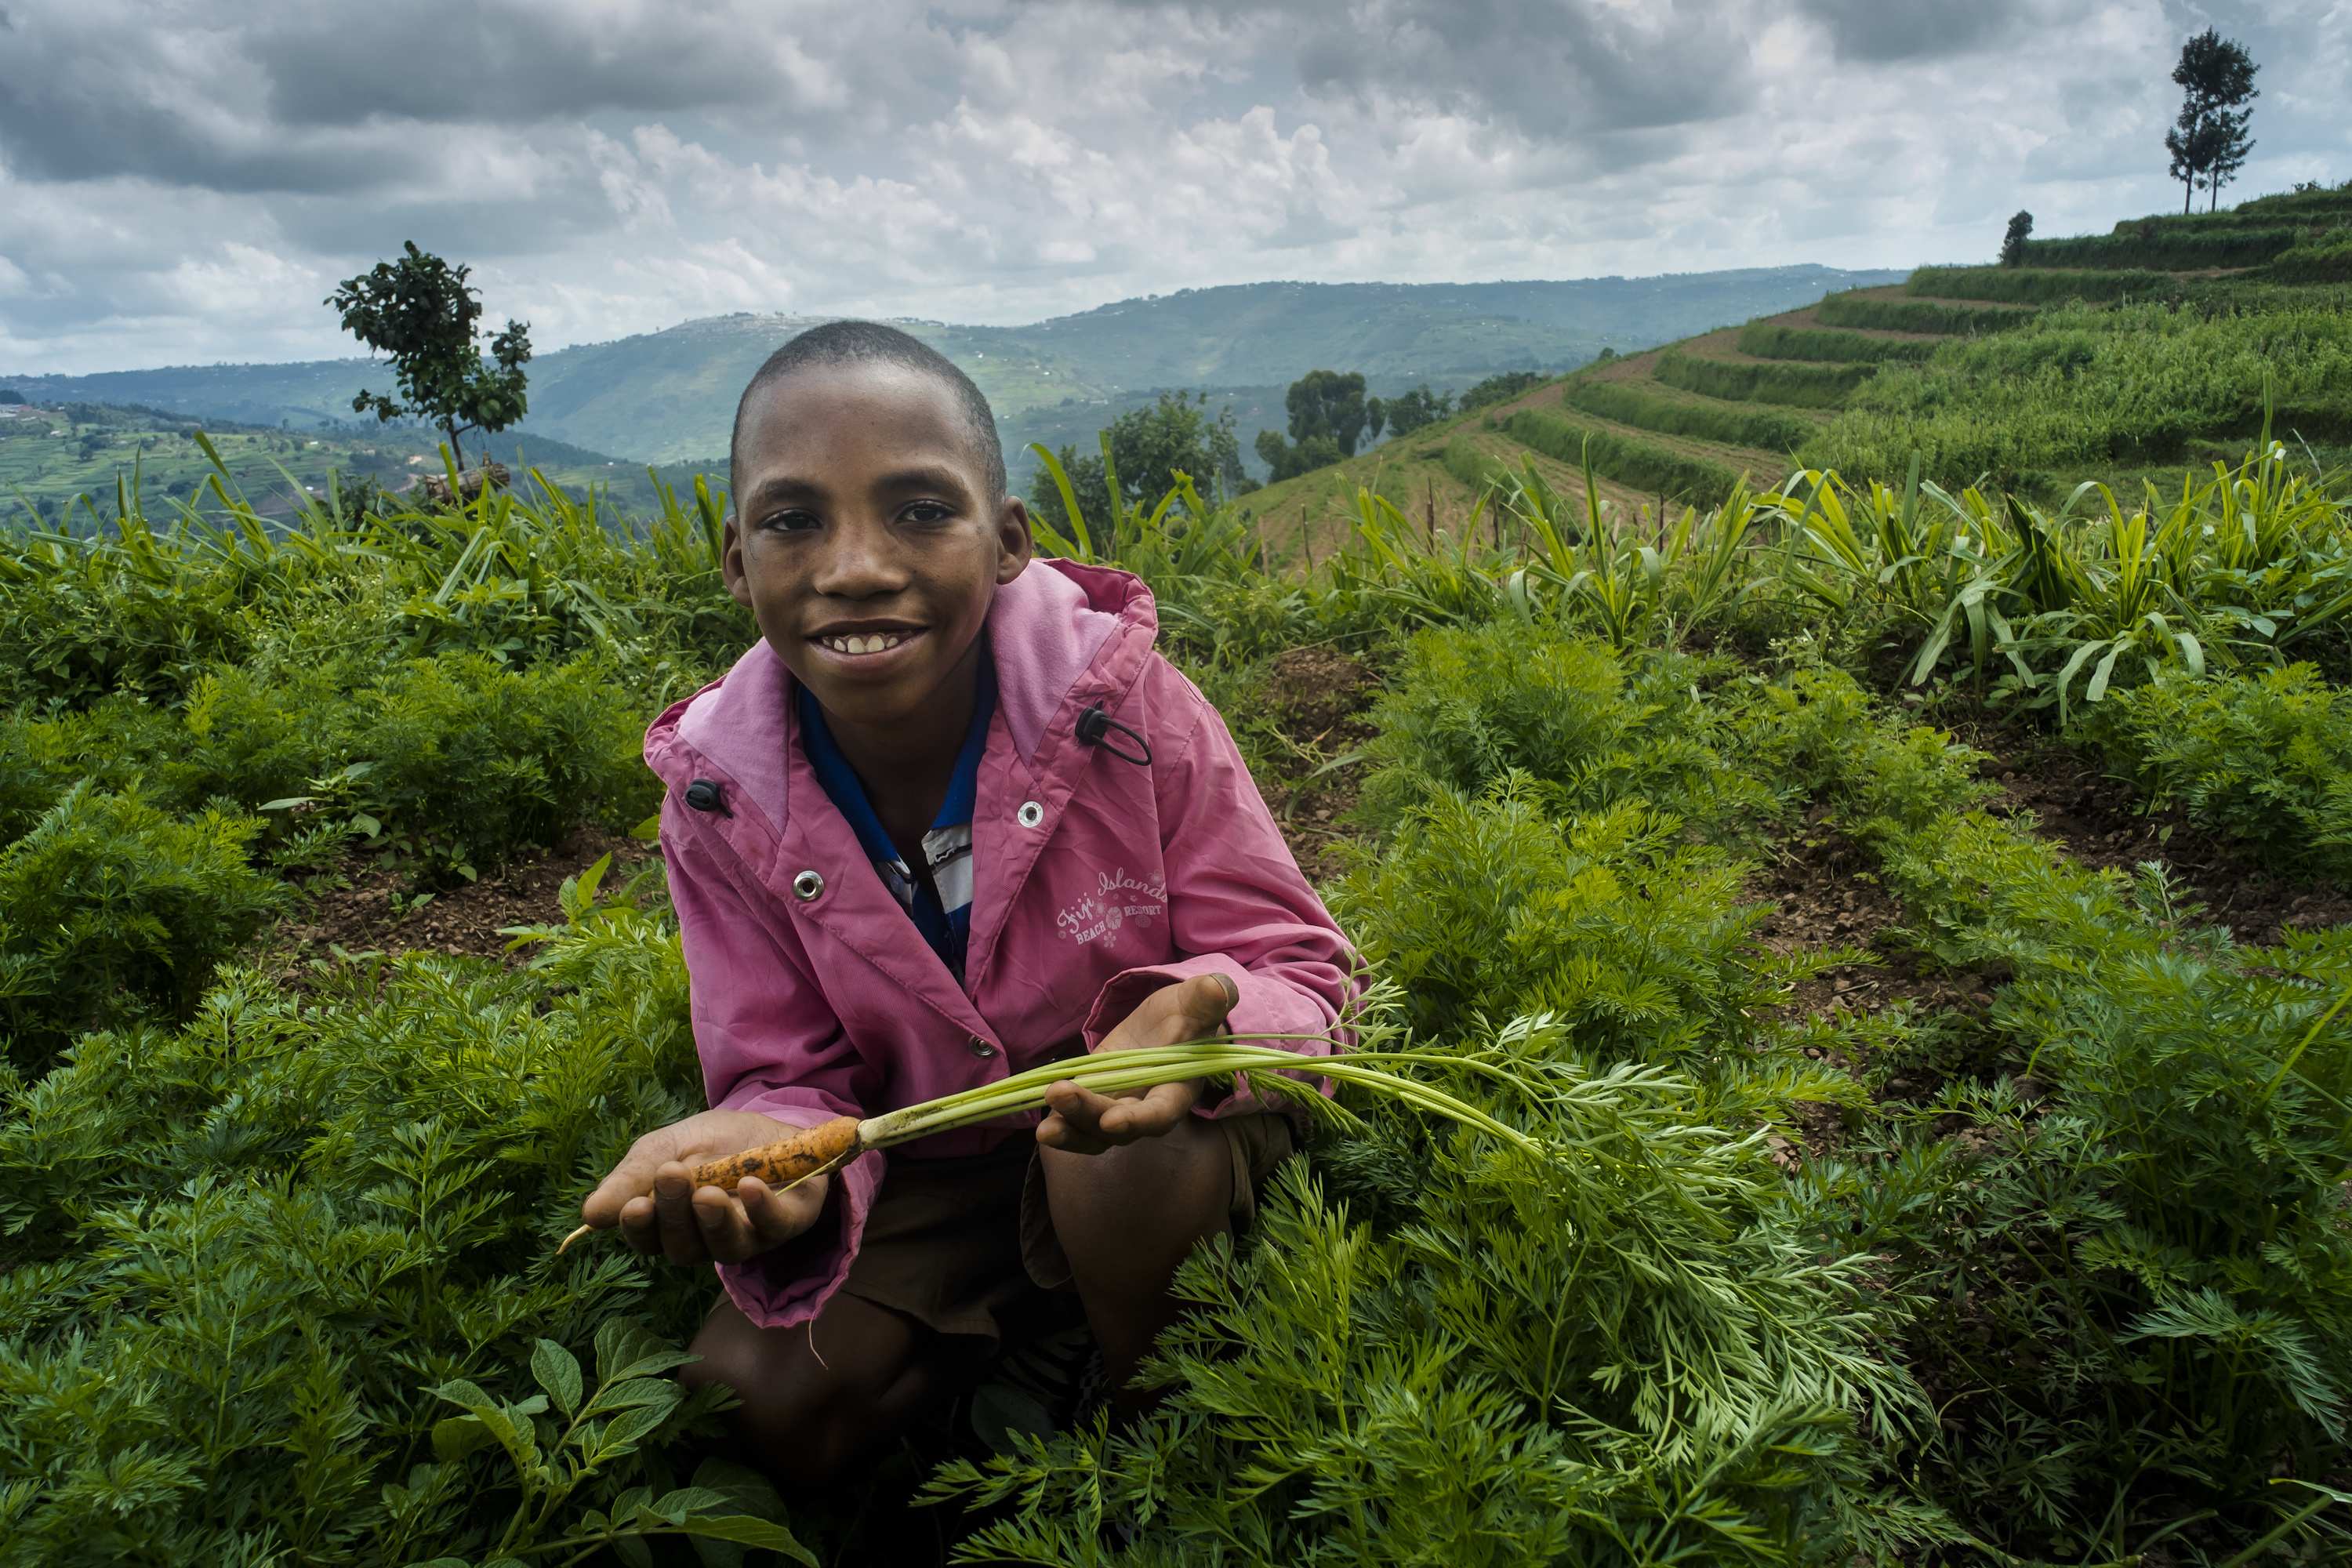 Kind in Ruanda mit einer Karotte (Foto: Jakob Studnar)v